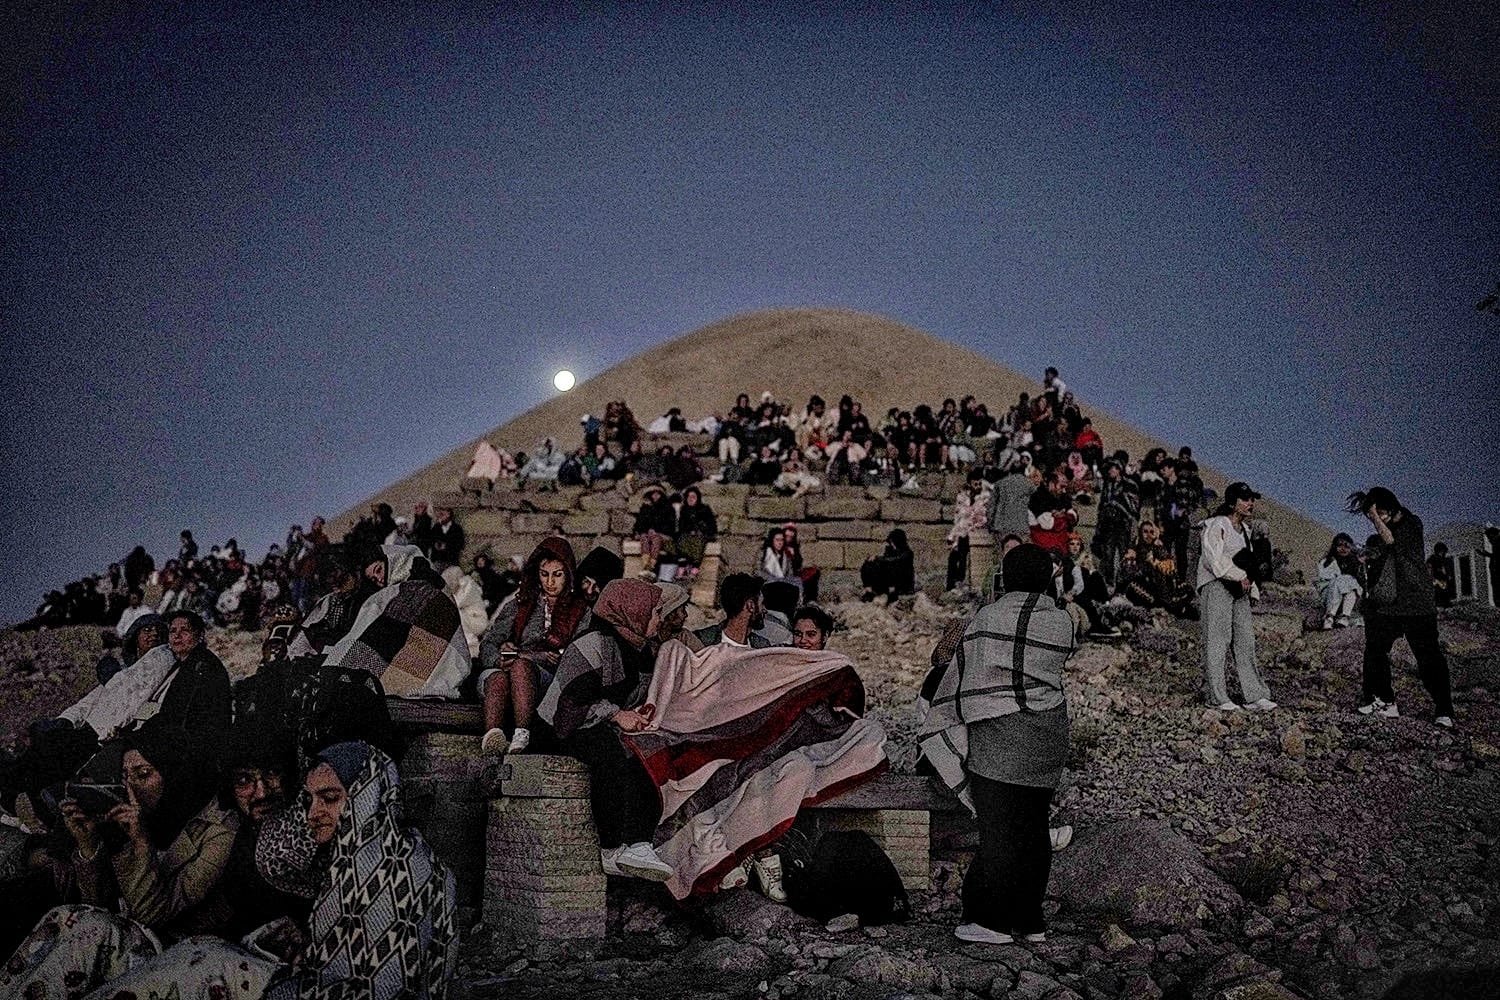 People watch the night sky on Mount Nemrut, Adıyaman, Türkiye, Aug. 11, 2022. (Photo by Uğur Yıldırım)